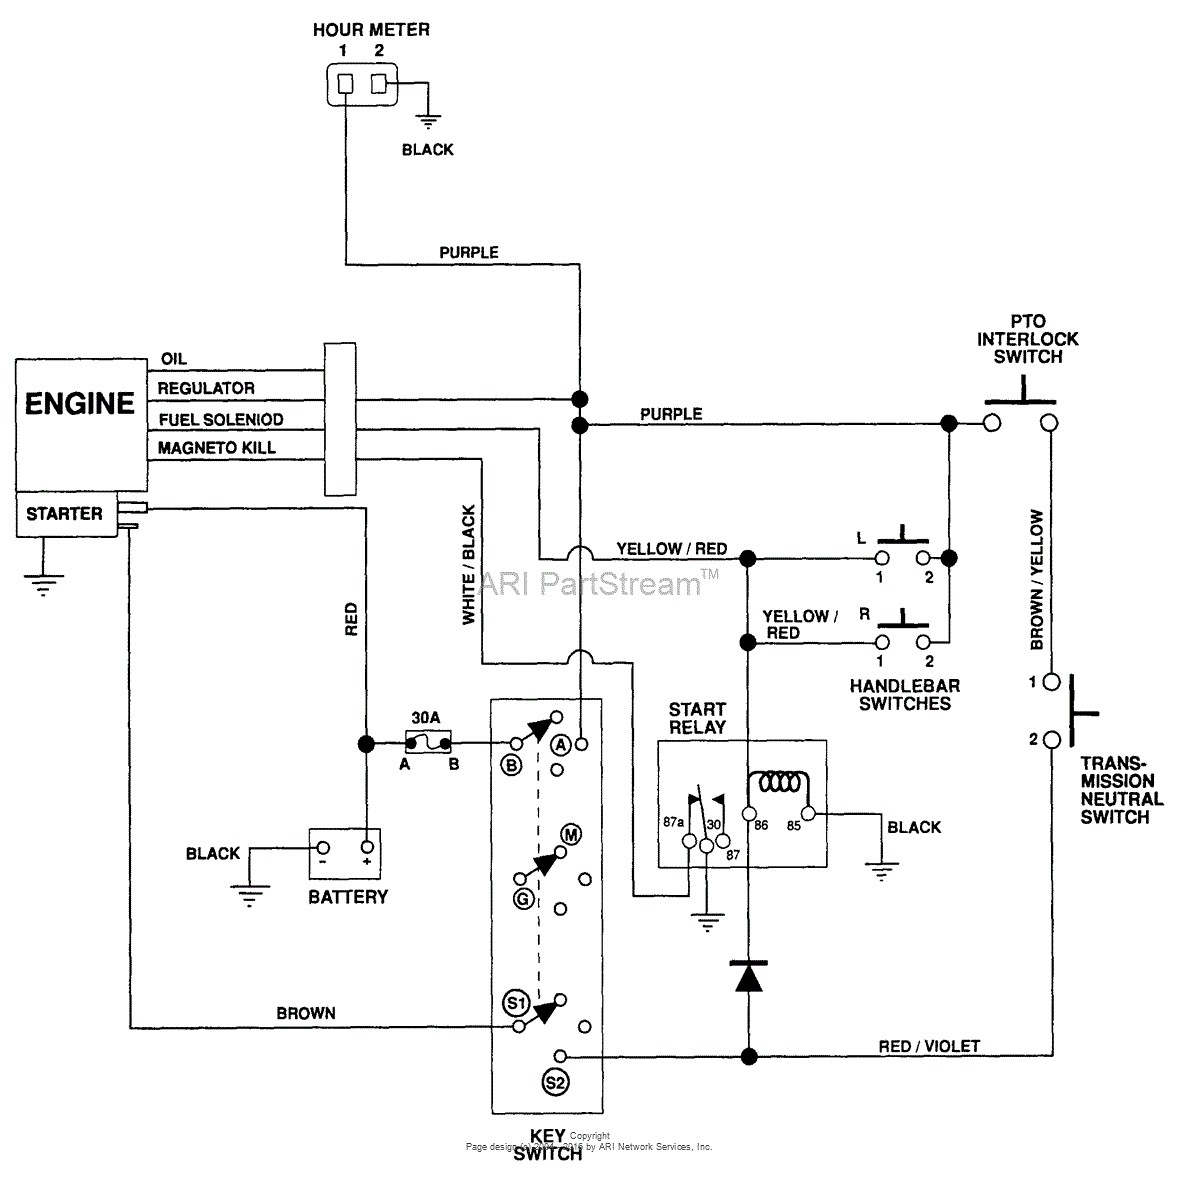 Wiring Diagram For Kohler Engine